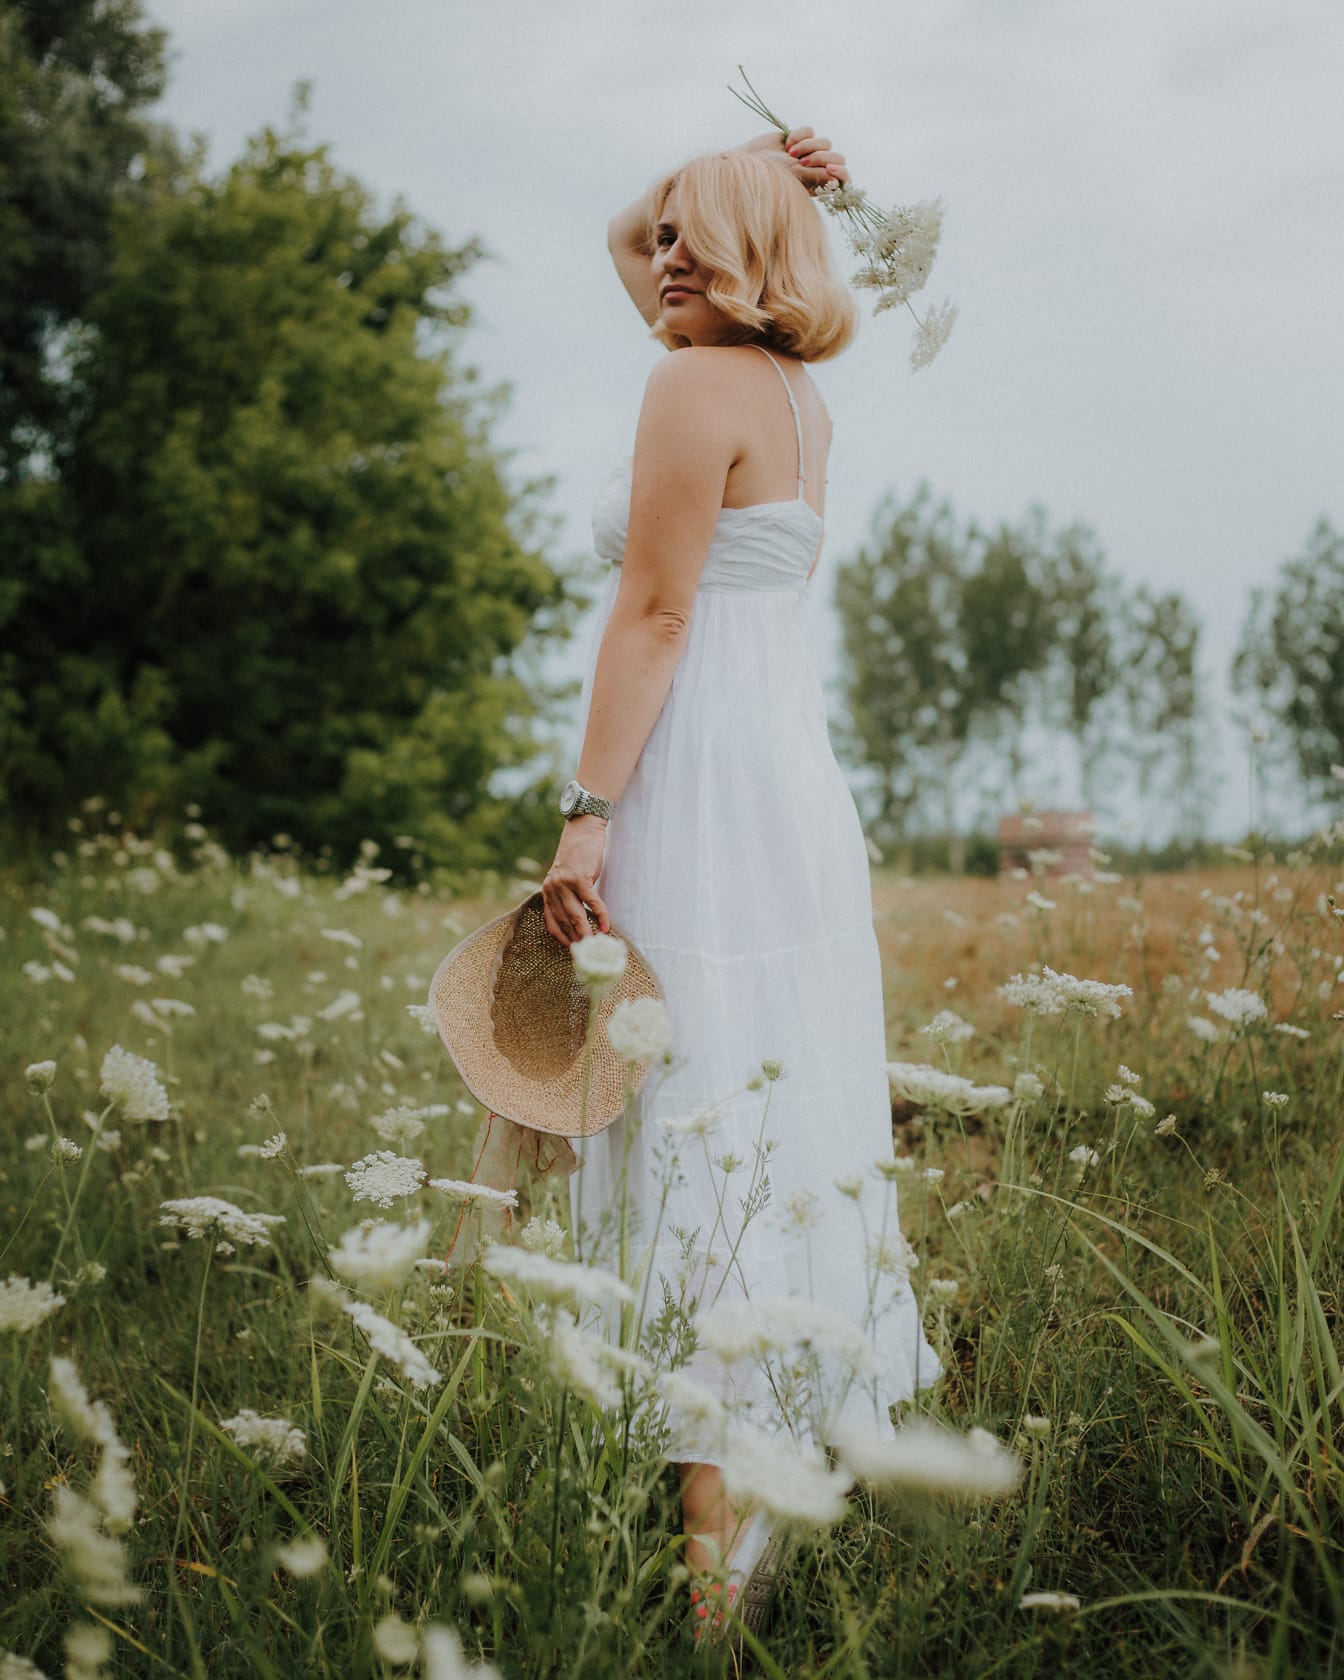 Flot blondine stående i hvid kjole på eng